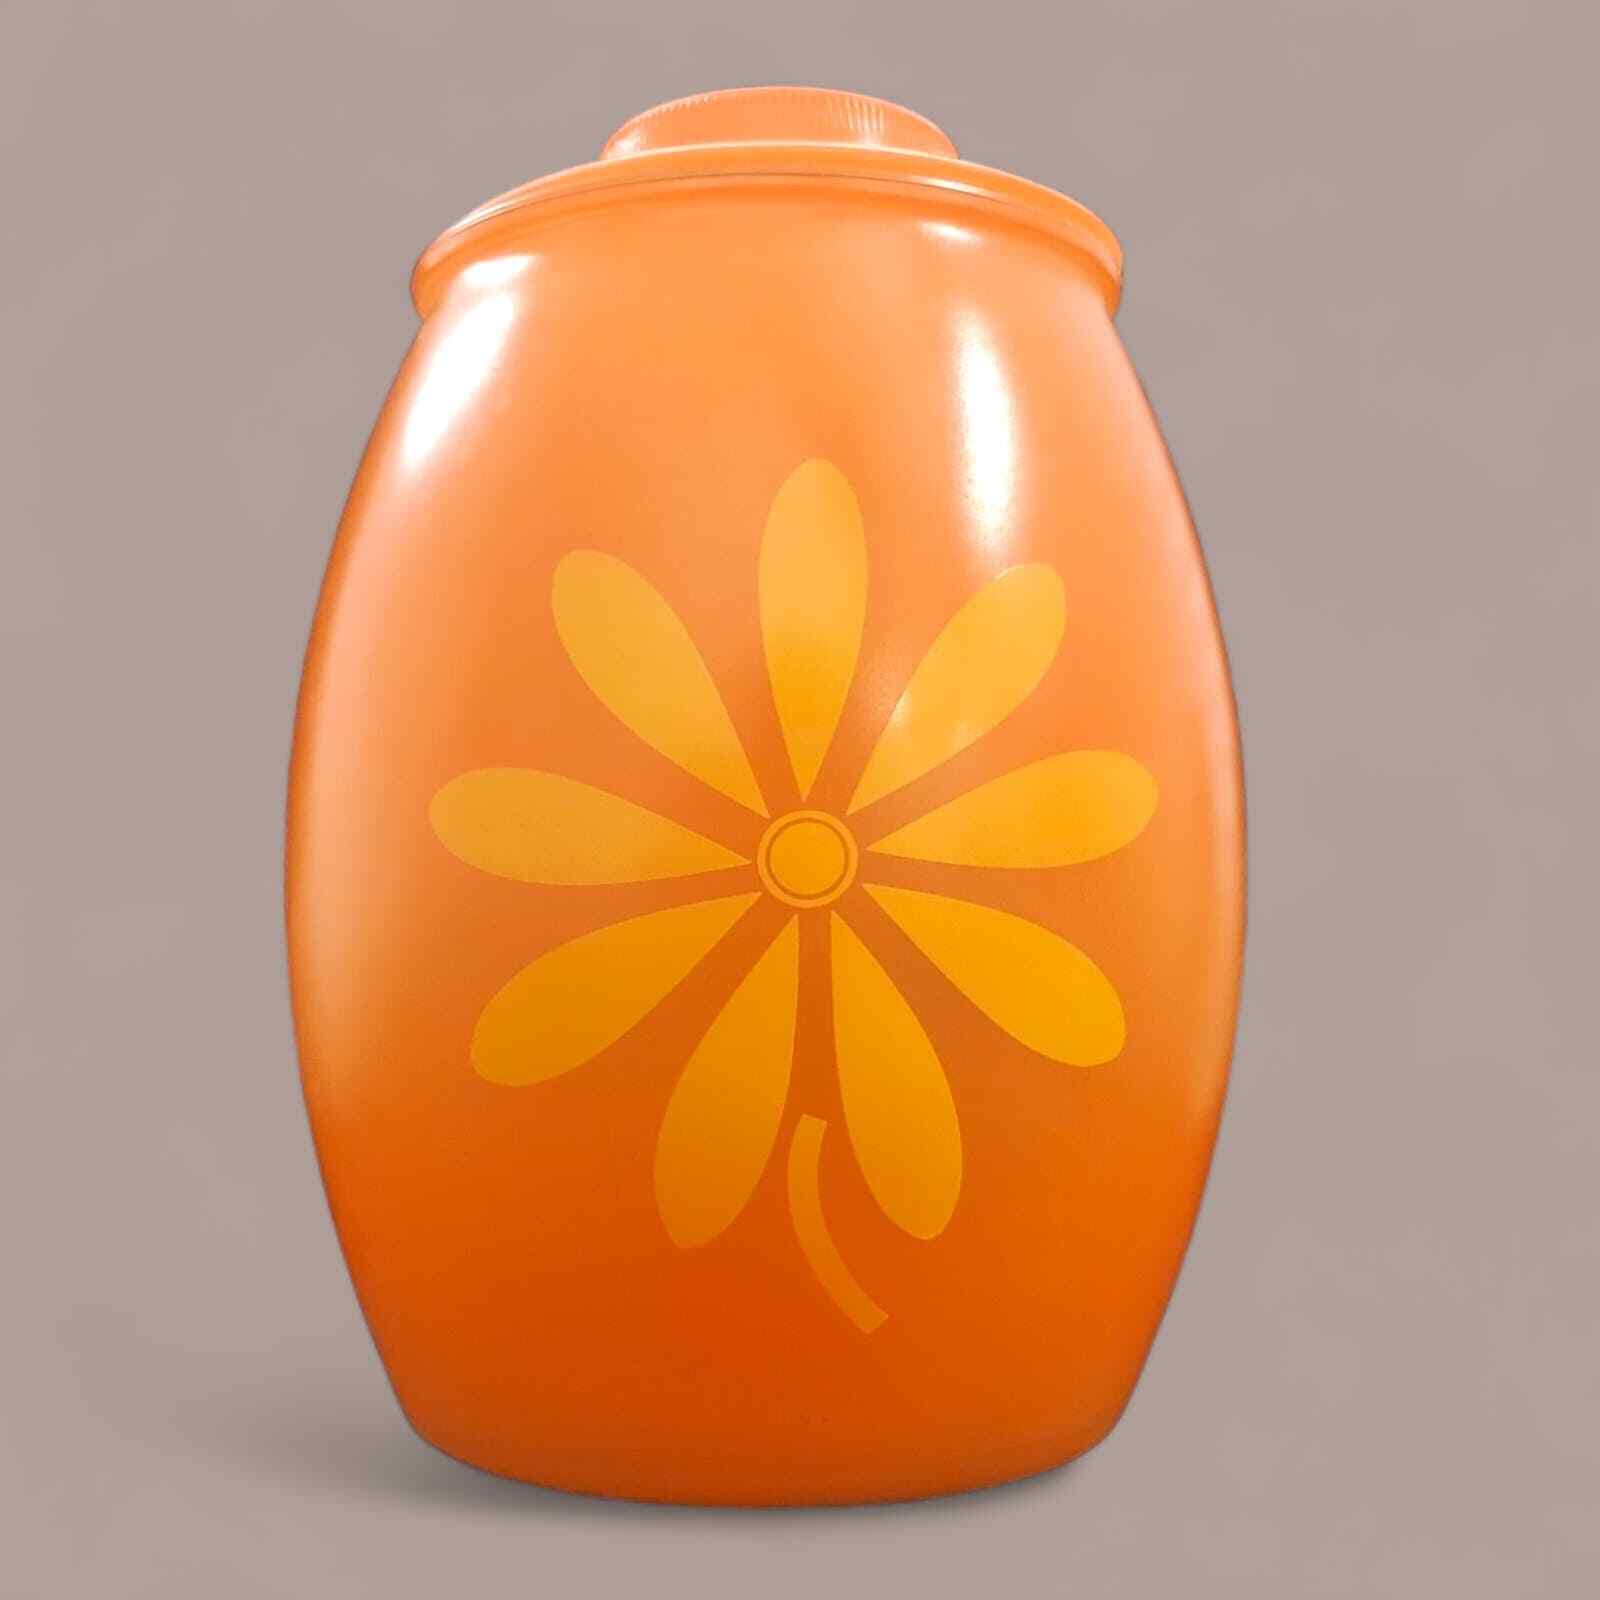 RARE Vintage MCM Bartlett Collins Glass Cookie Jar- Orange w Yellow Flower 1960s